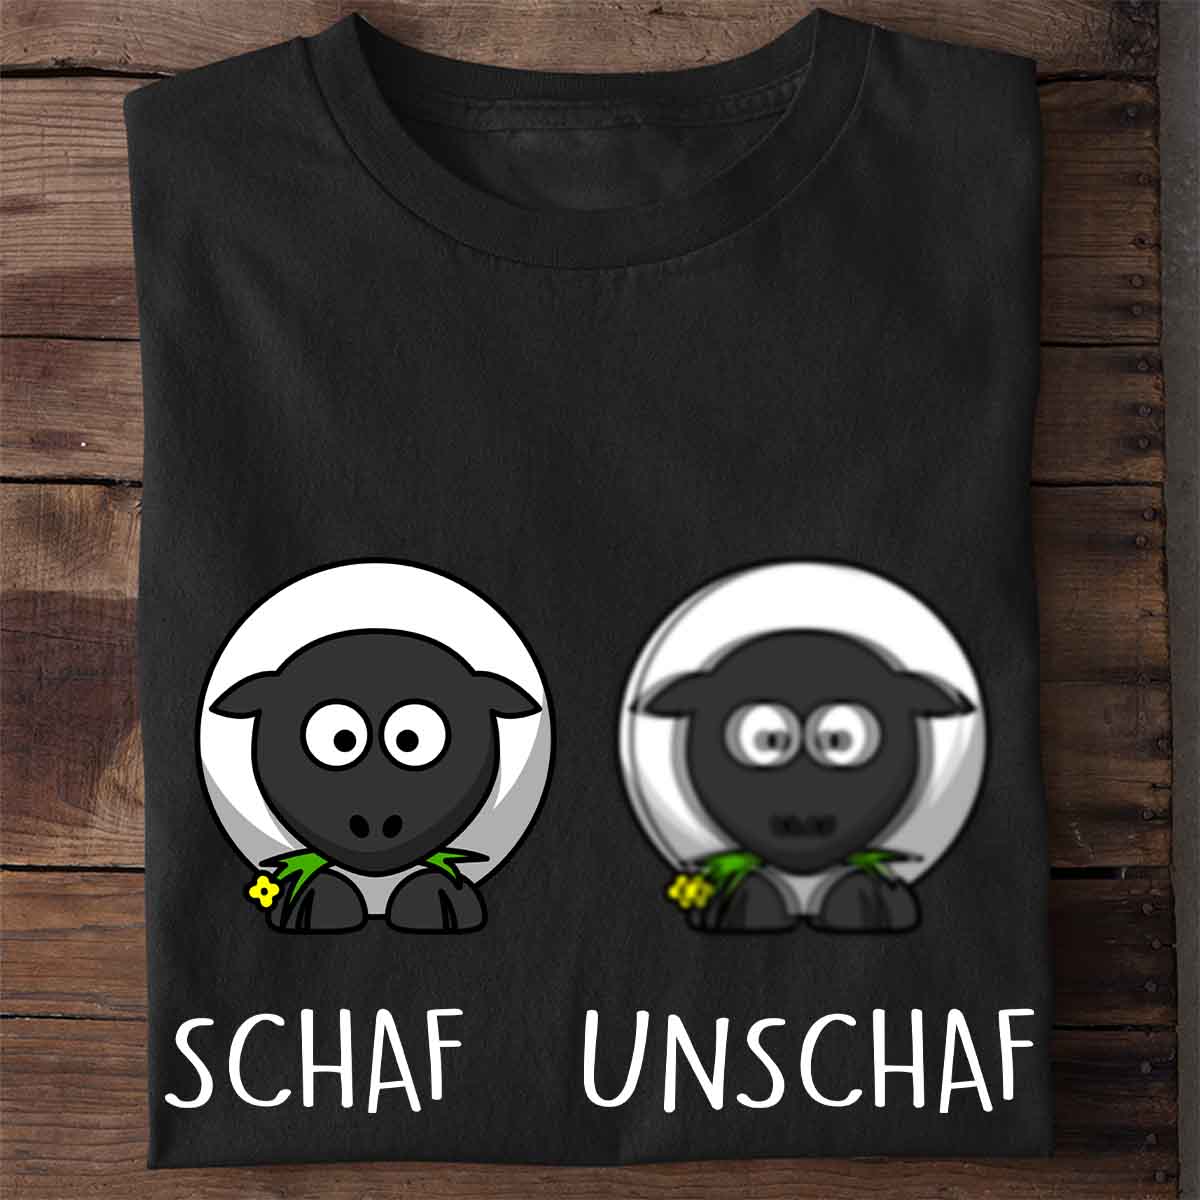 Unschaf - Shirt Unisex